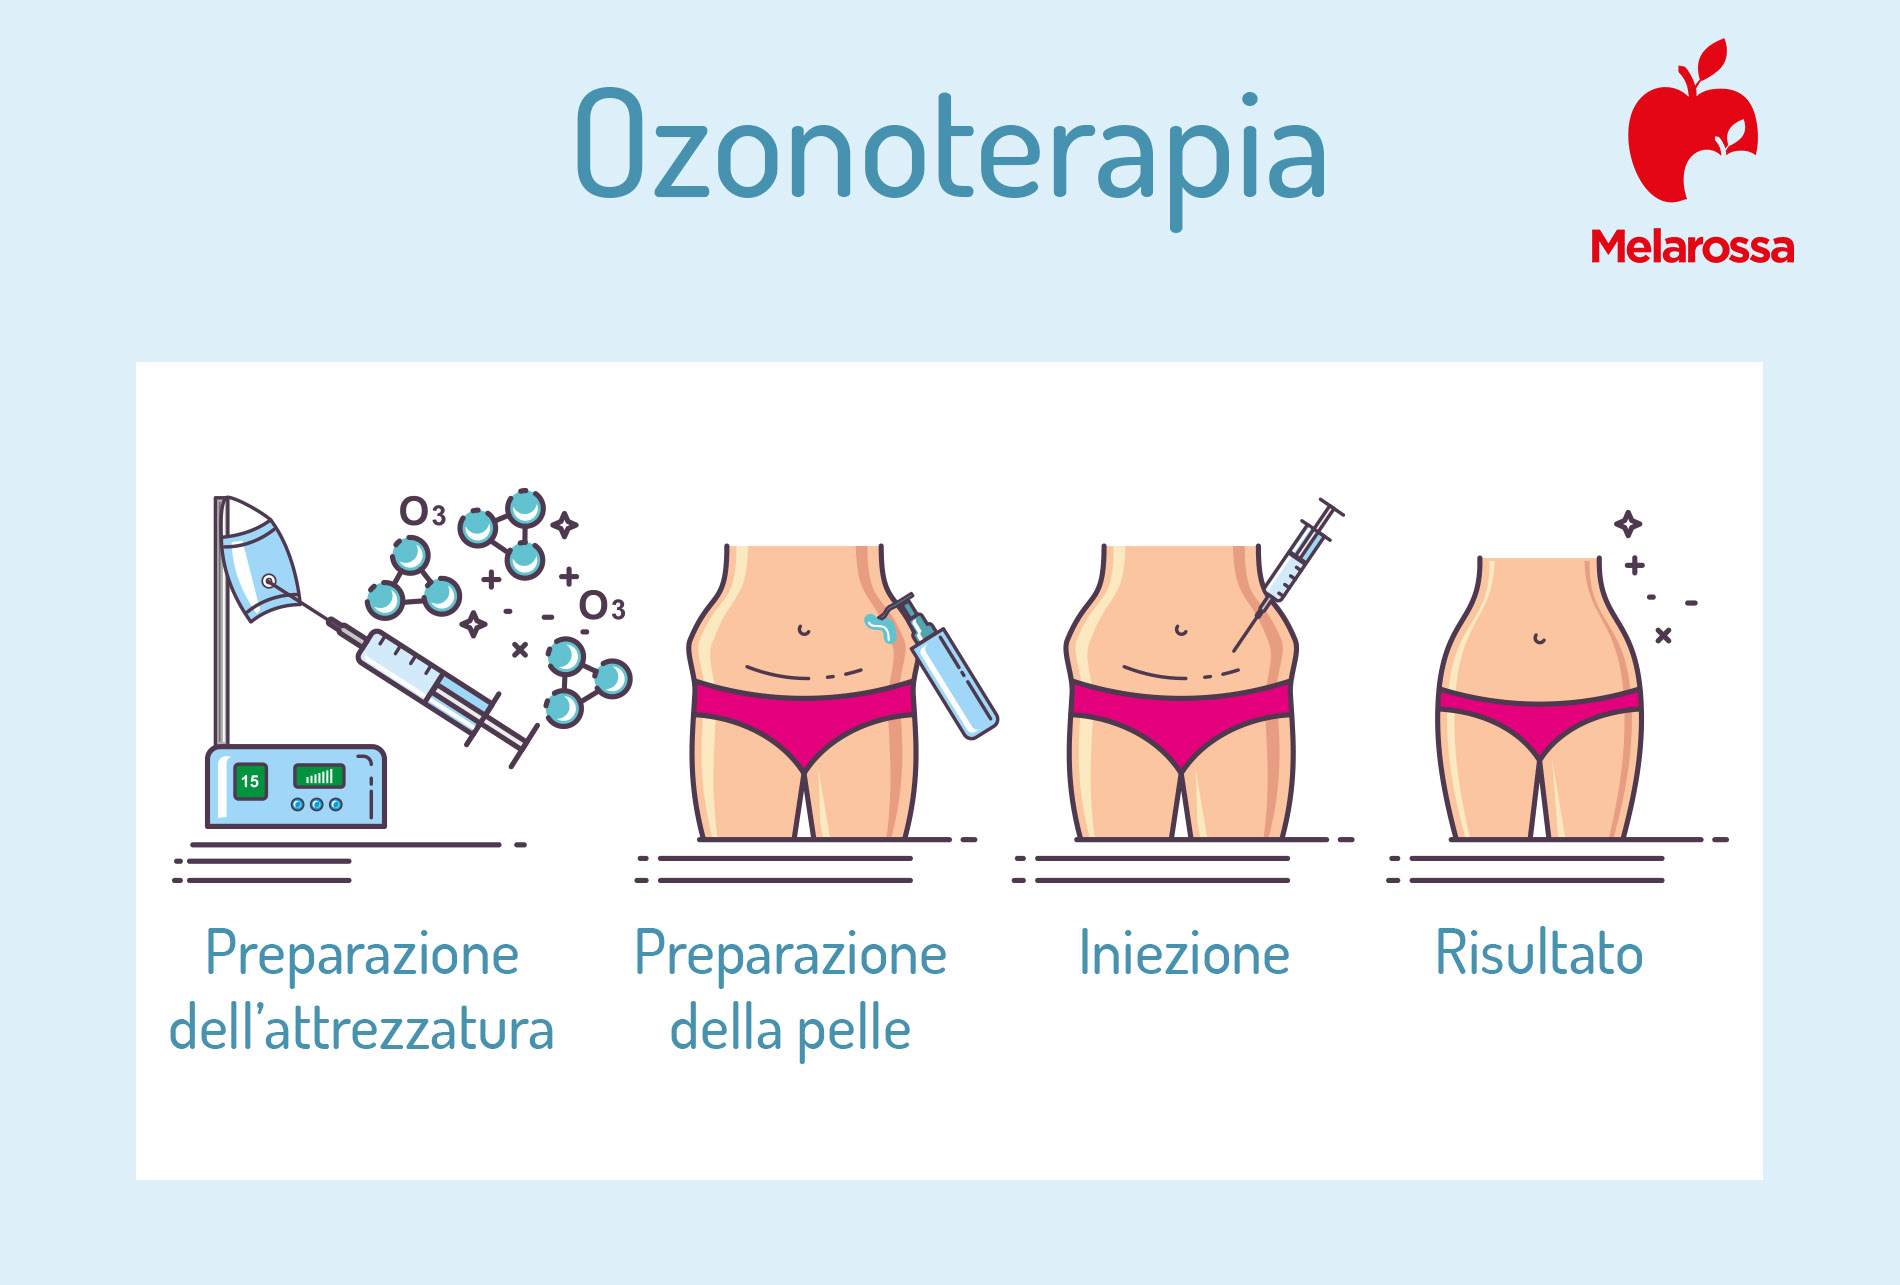 ozonoterapia: come funziona 